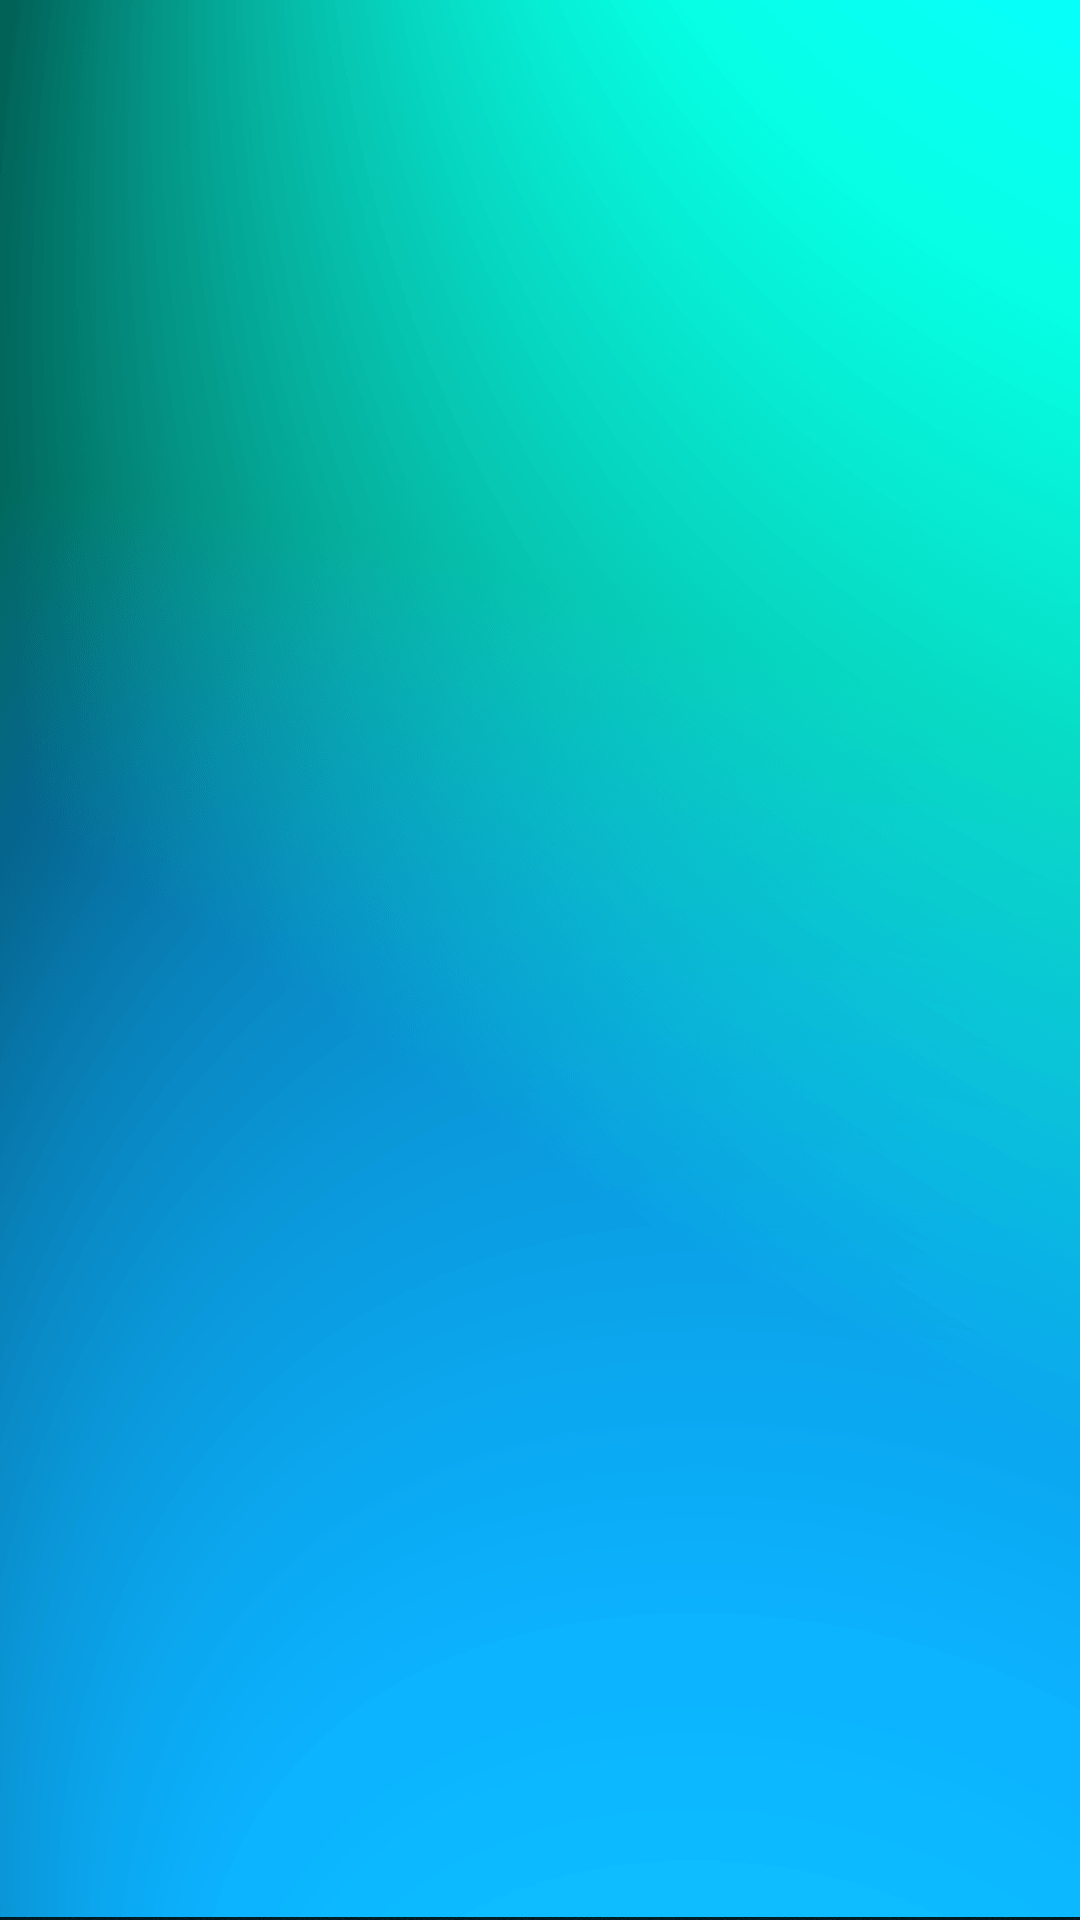 Hình nền đầy màu sắc với hoa văn màu xanh và xanh da trời đan xen tạo nên vẻ đẹp tuyệt vời cho những điểm nhấn trên máy tính của bạn.